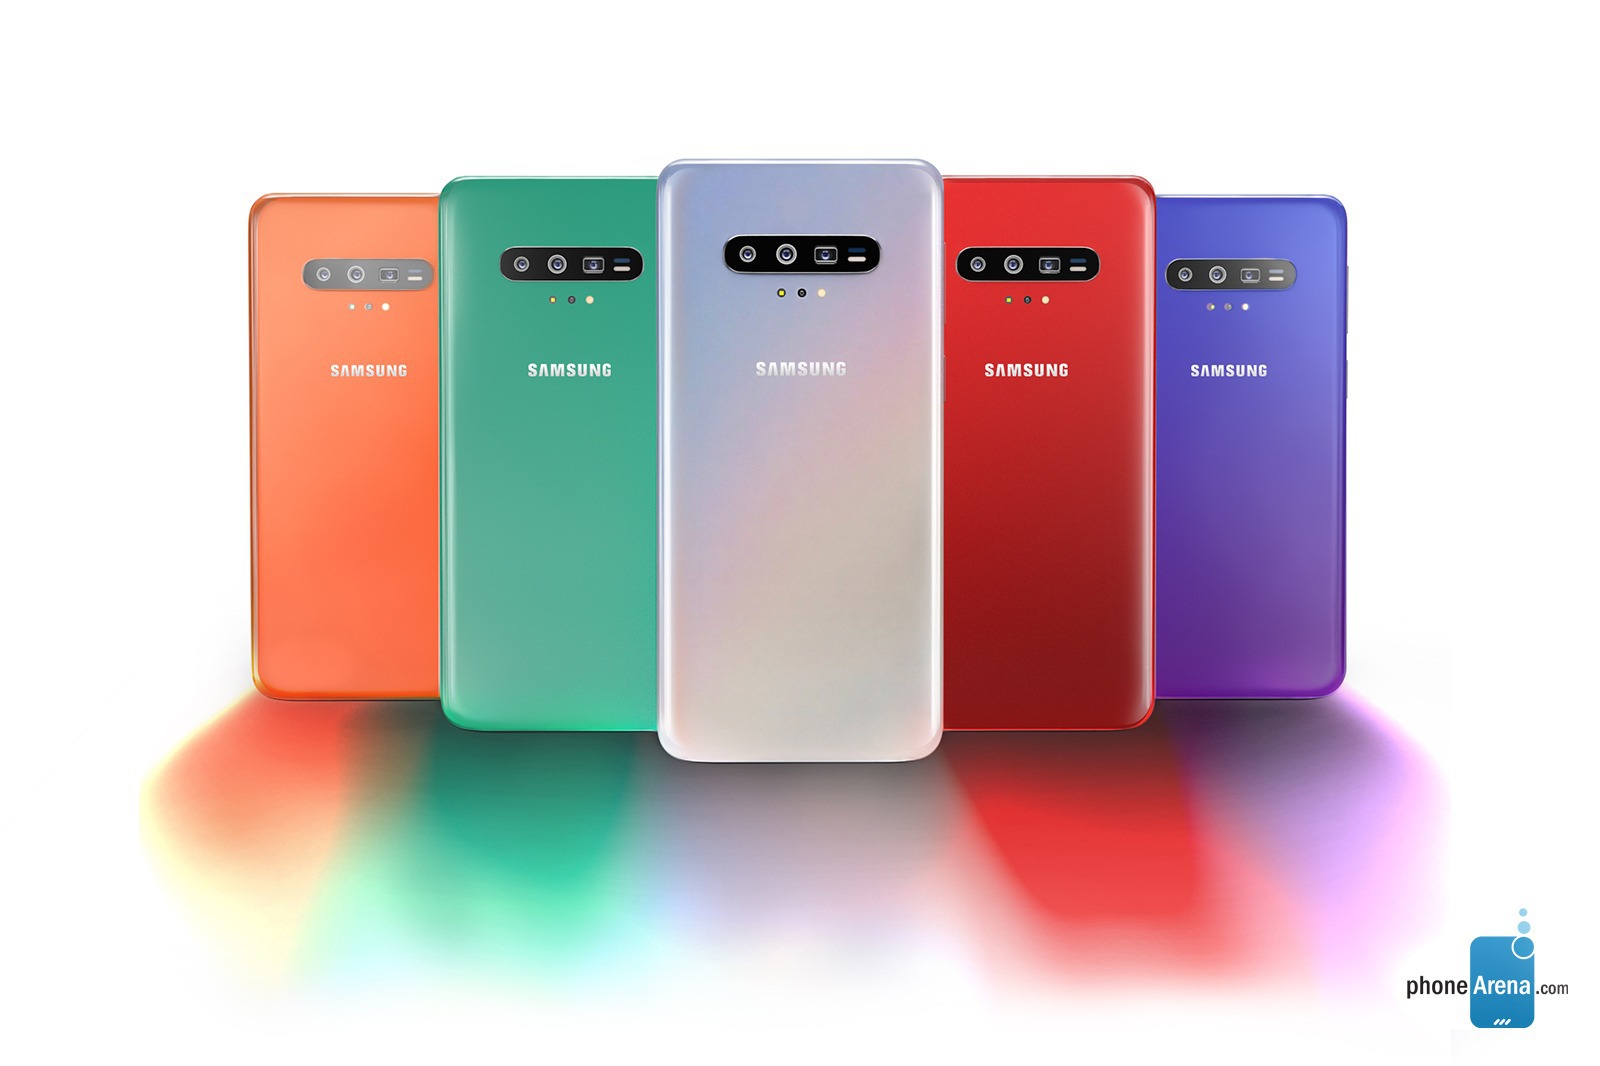 Samsung Galaxy S11 render